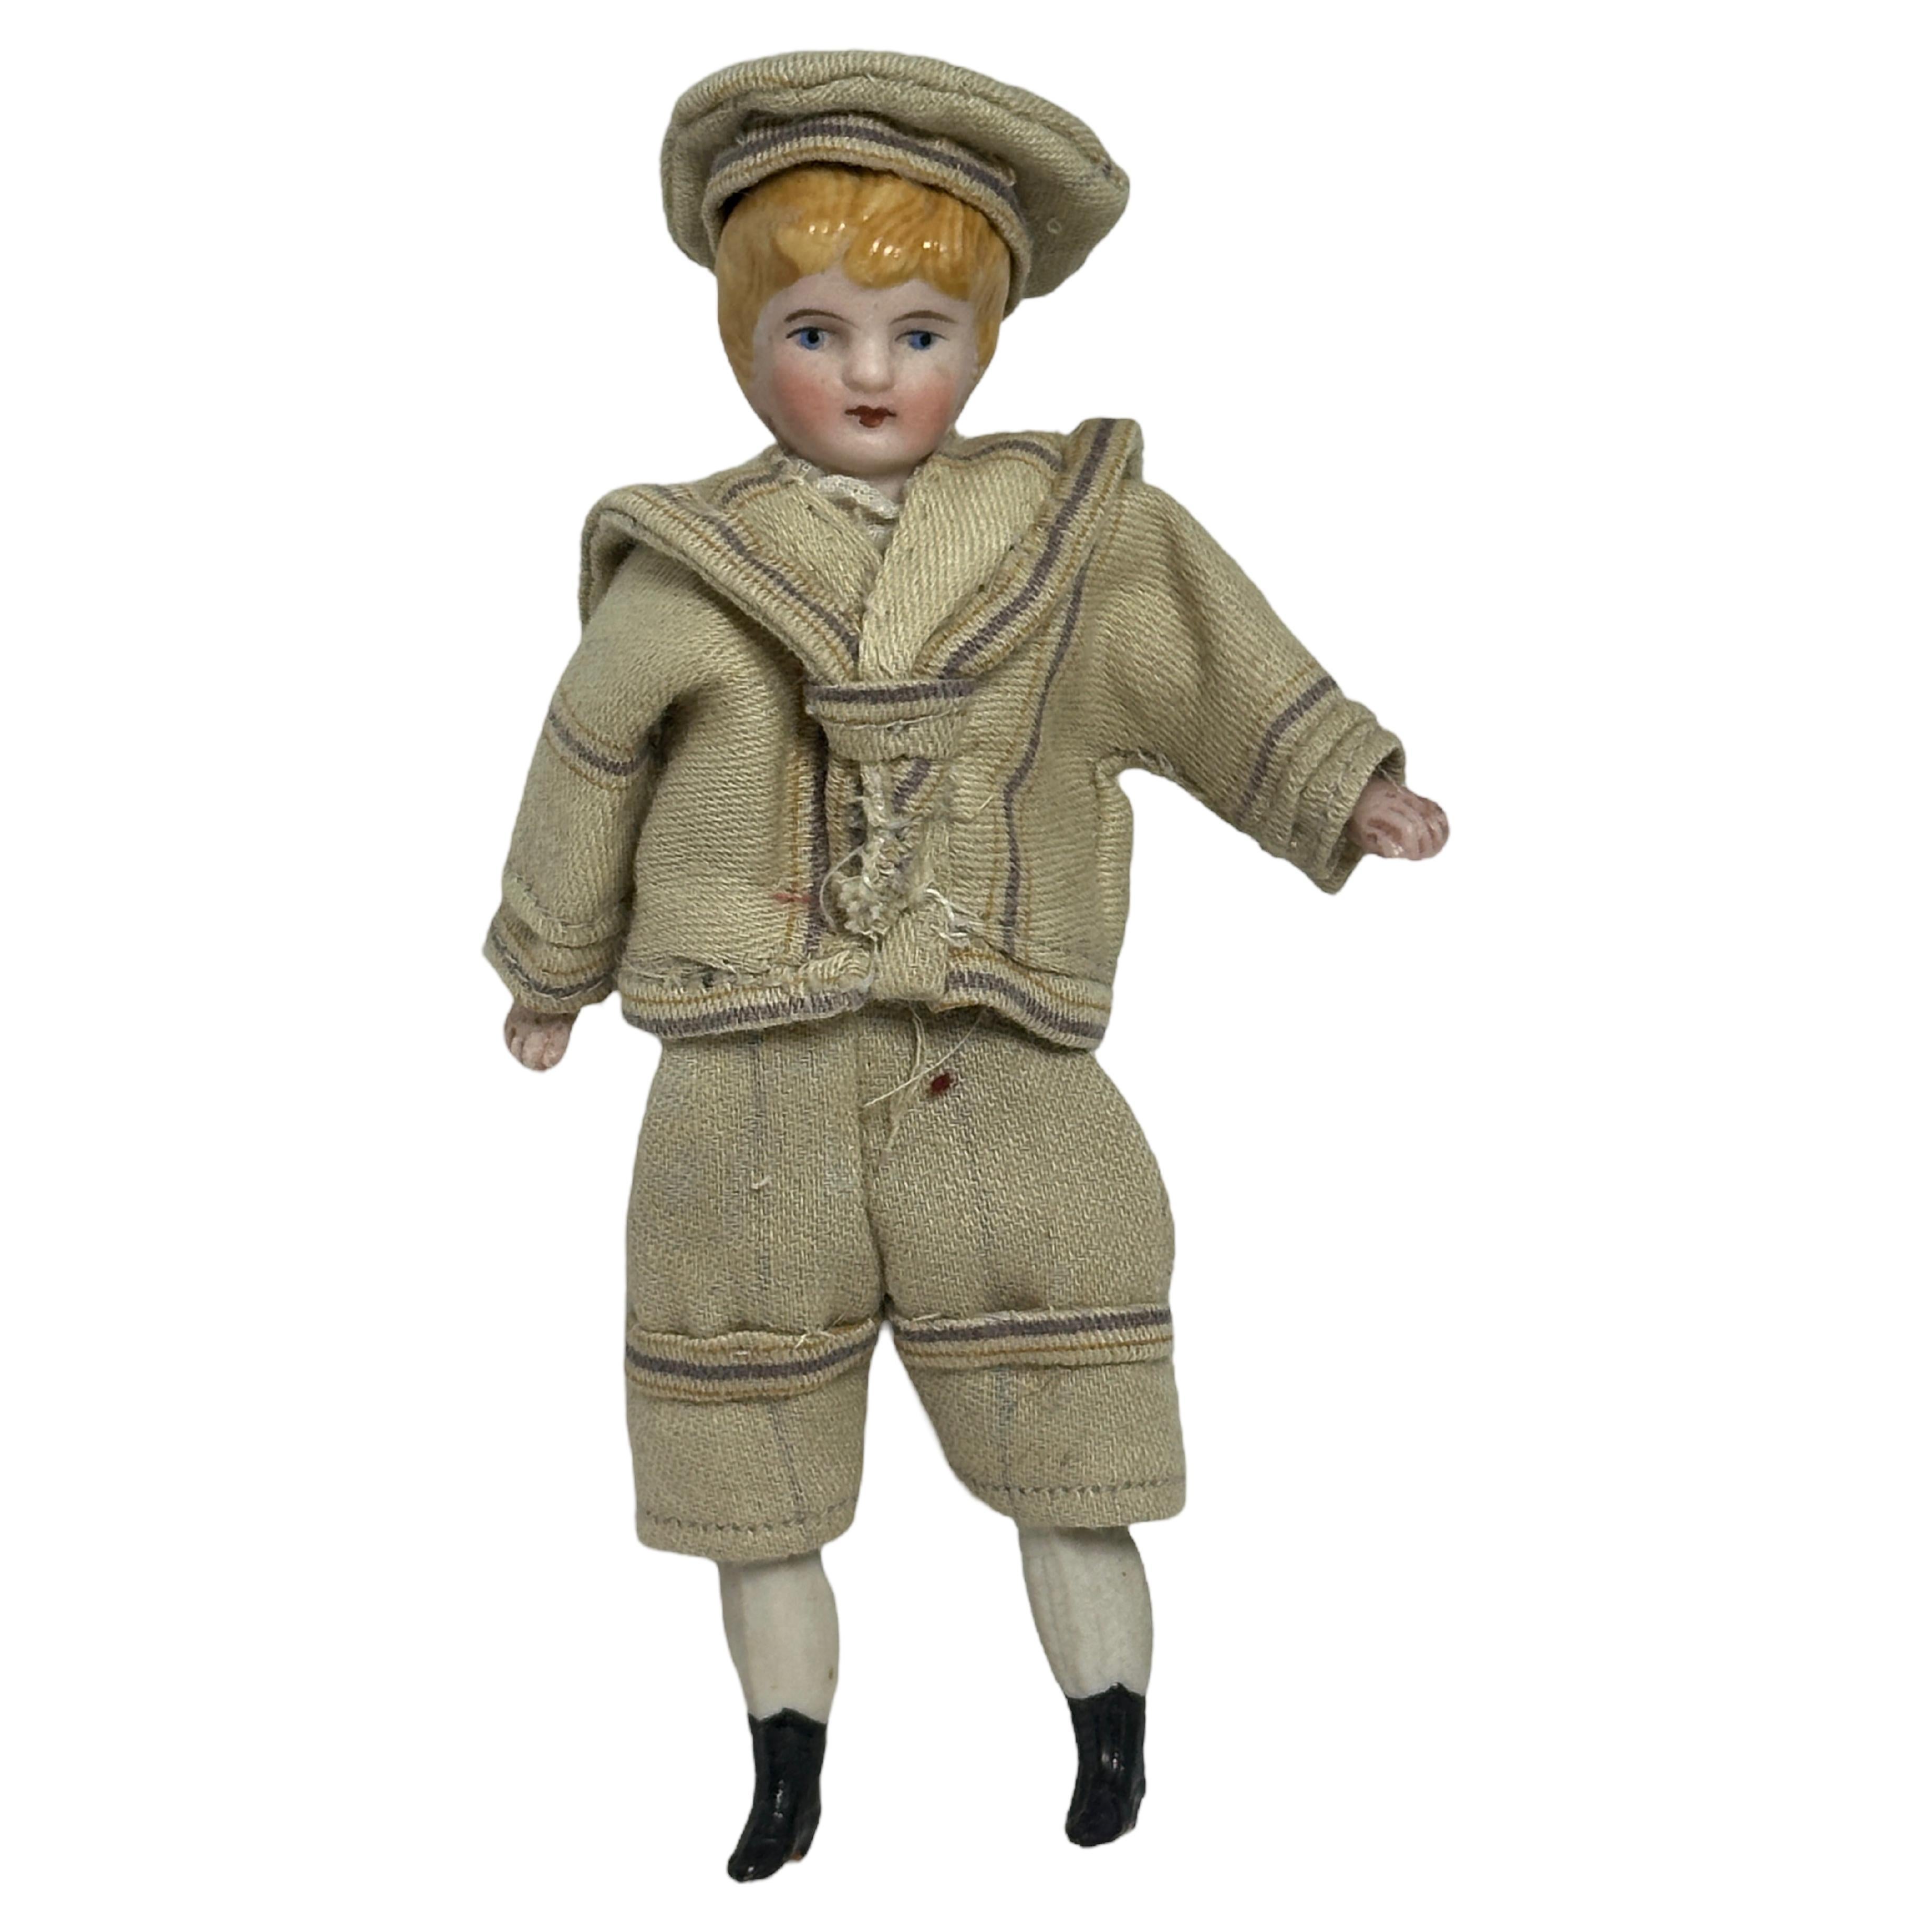 Antikes deutsches Puppenhaus-Dollhouse-Spielzeug, gekleidet in Matrosen-Outfit, 1900er Jahre